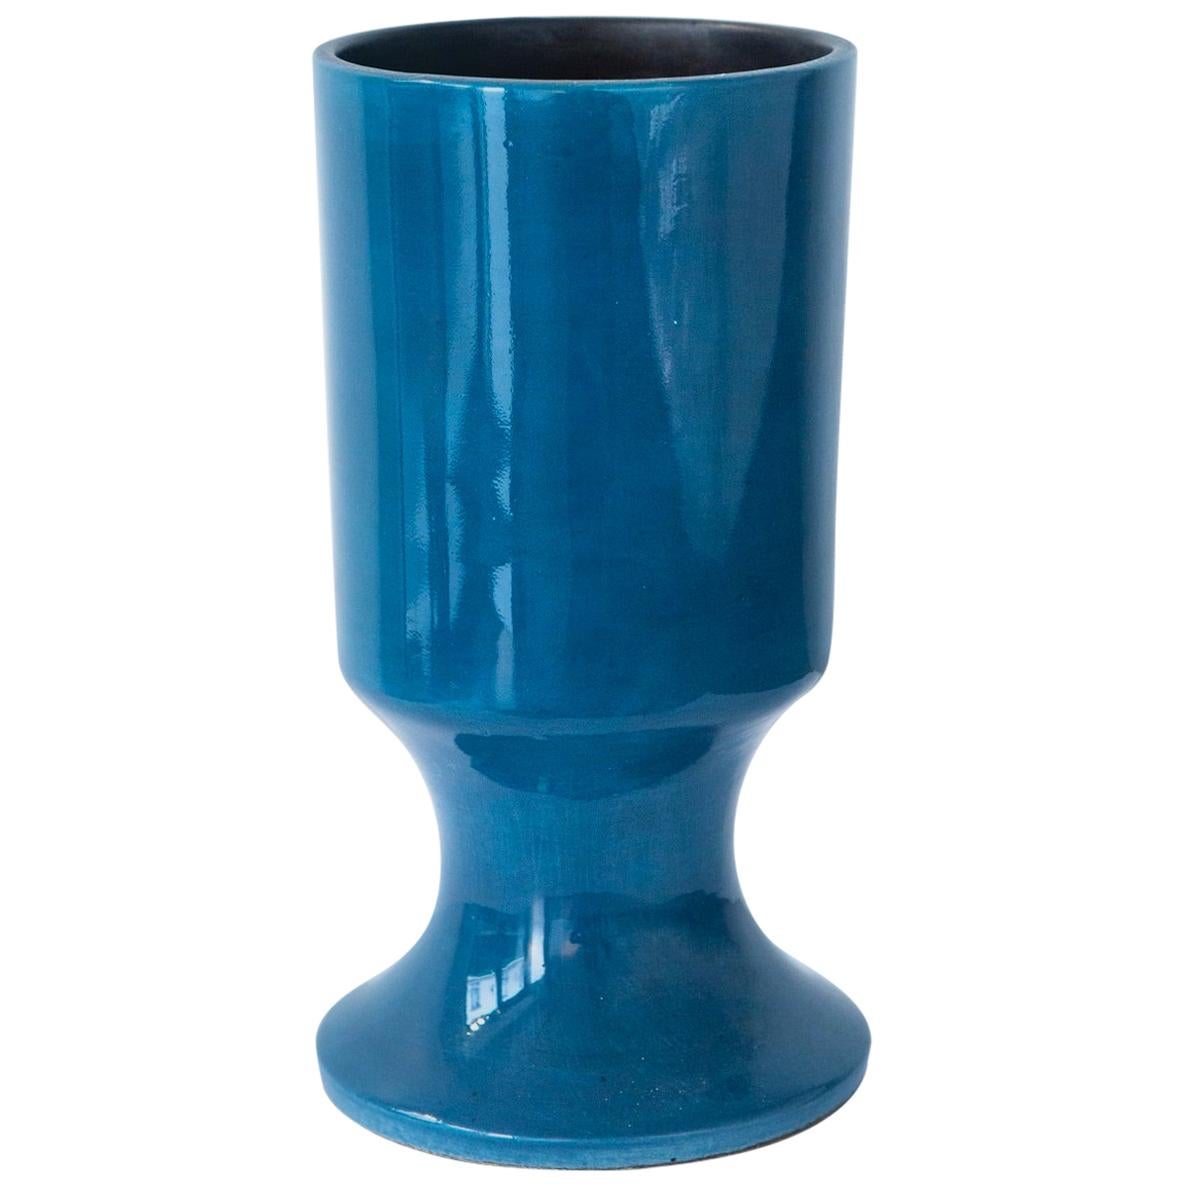 Georges Jouve, 'Vase Bleu' 'Blue Vase'